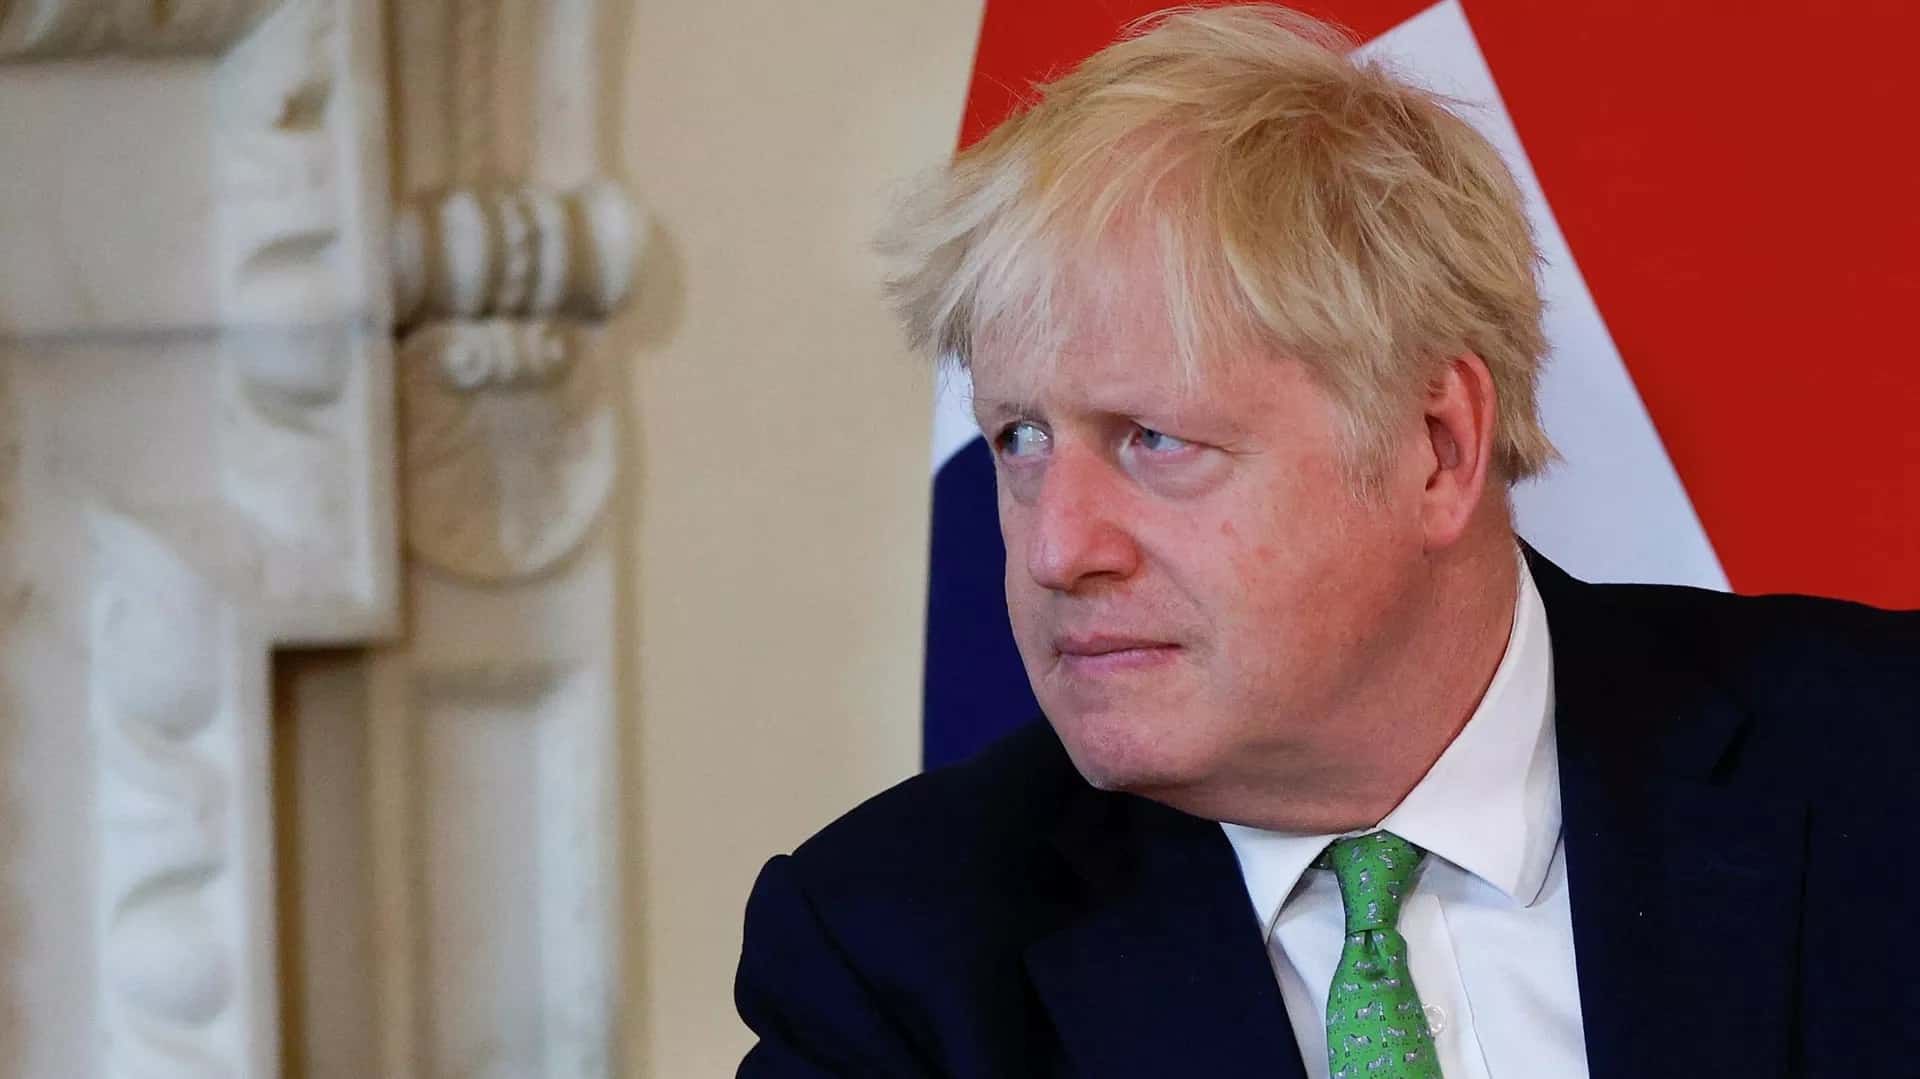 Truyền thông Anh đồng loạt đưa tin Thủ tướng Anh Boris Johnson chấp nhận từ chức và muốn tại vị cho tới khi tìm được người kế nhiệm. Ảnh: AP